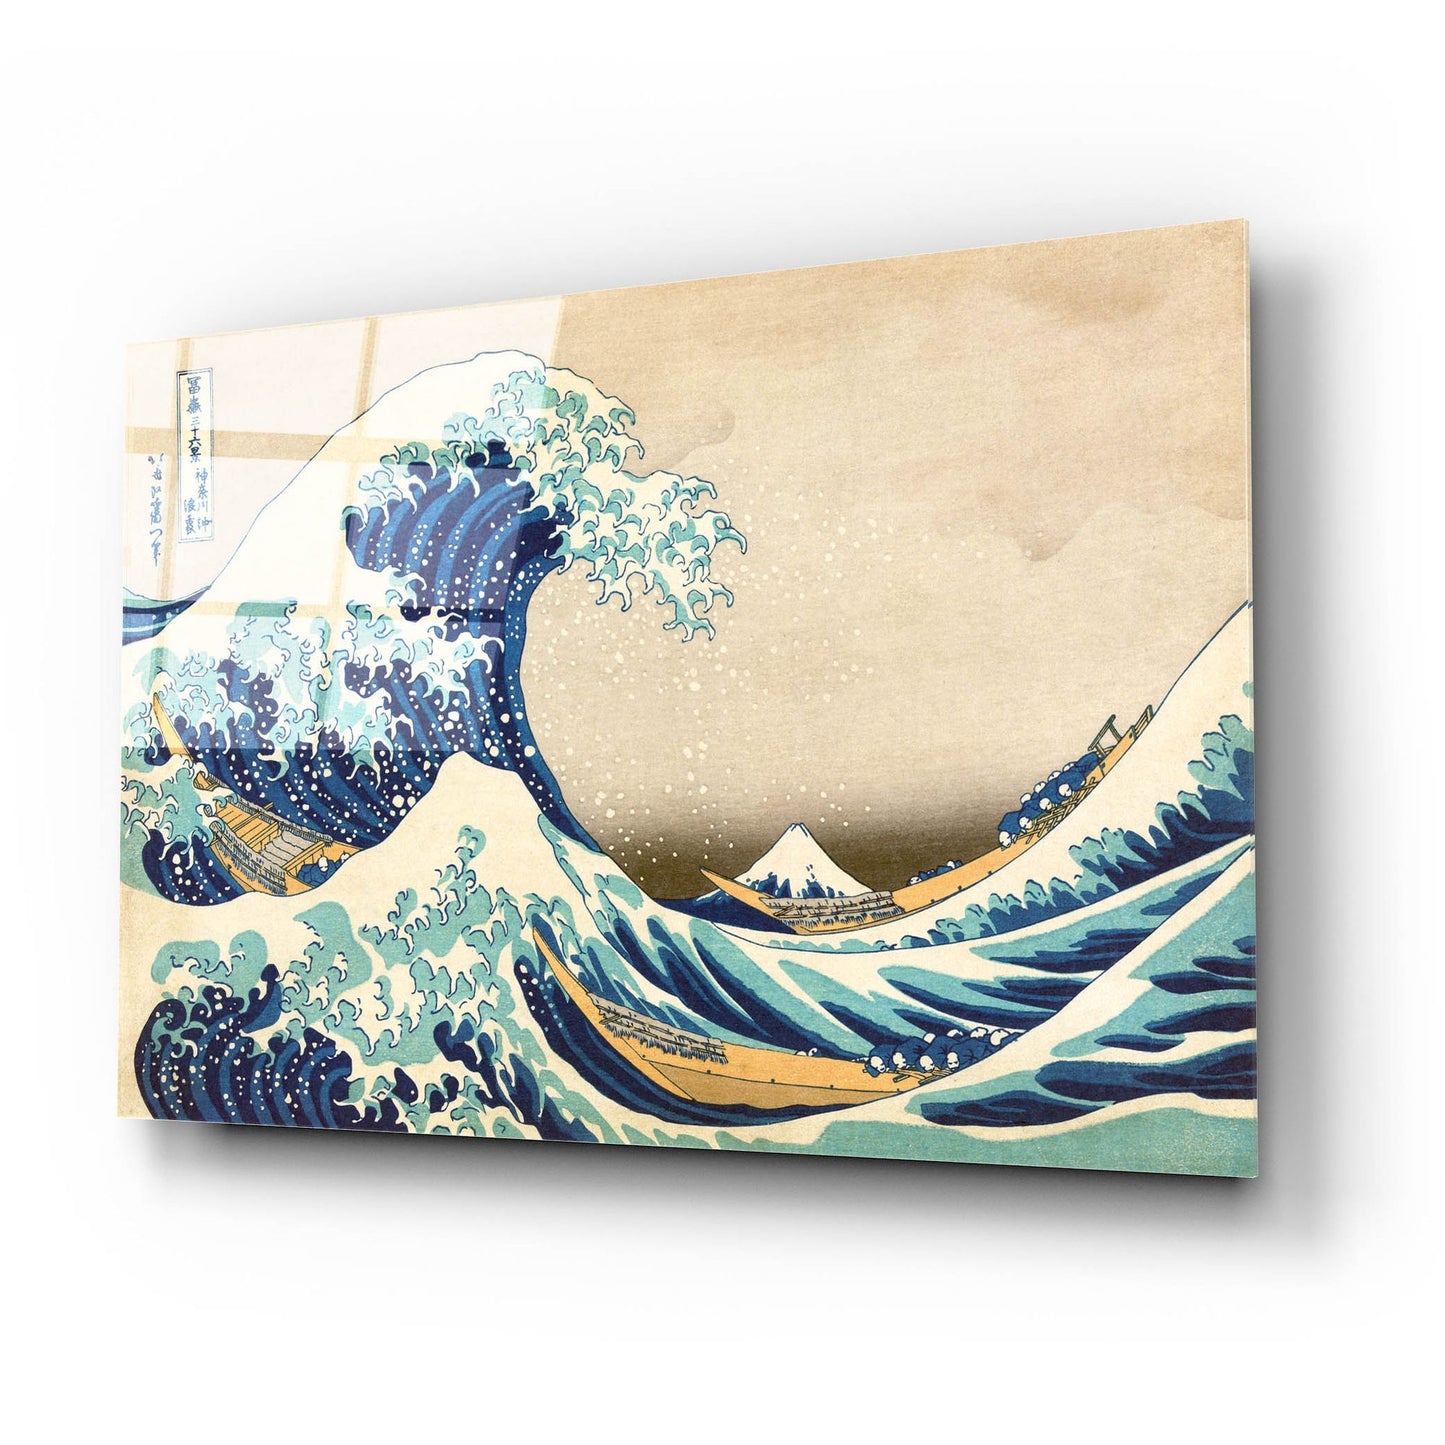 Epic Art 'The Great Wave Off Kanagawa' by Katsushika Hokusai, Acrylic Glass Wall Art,24x16